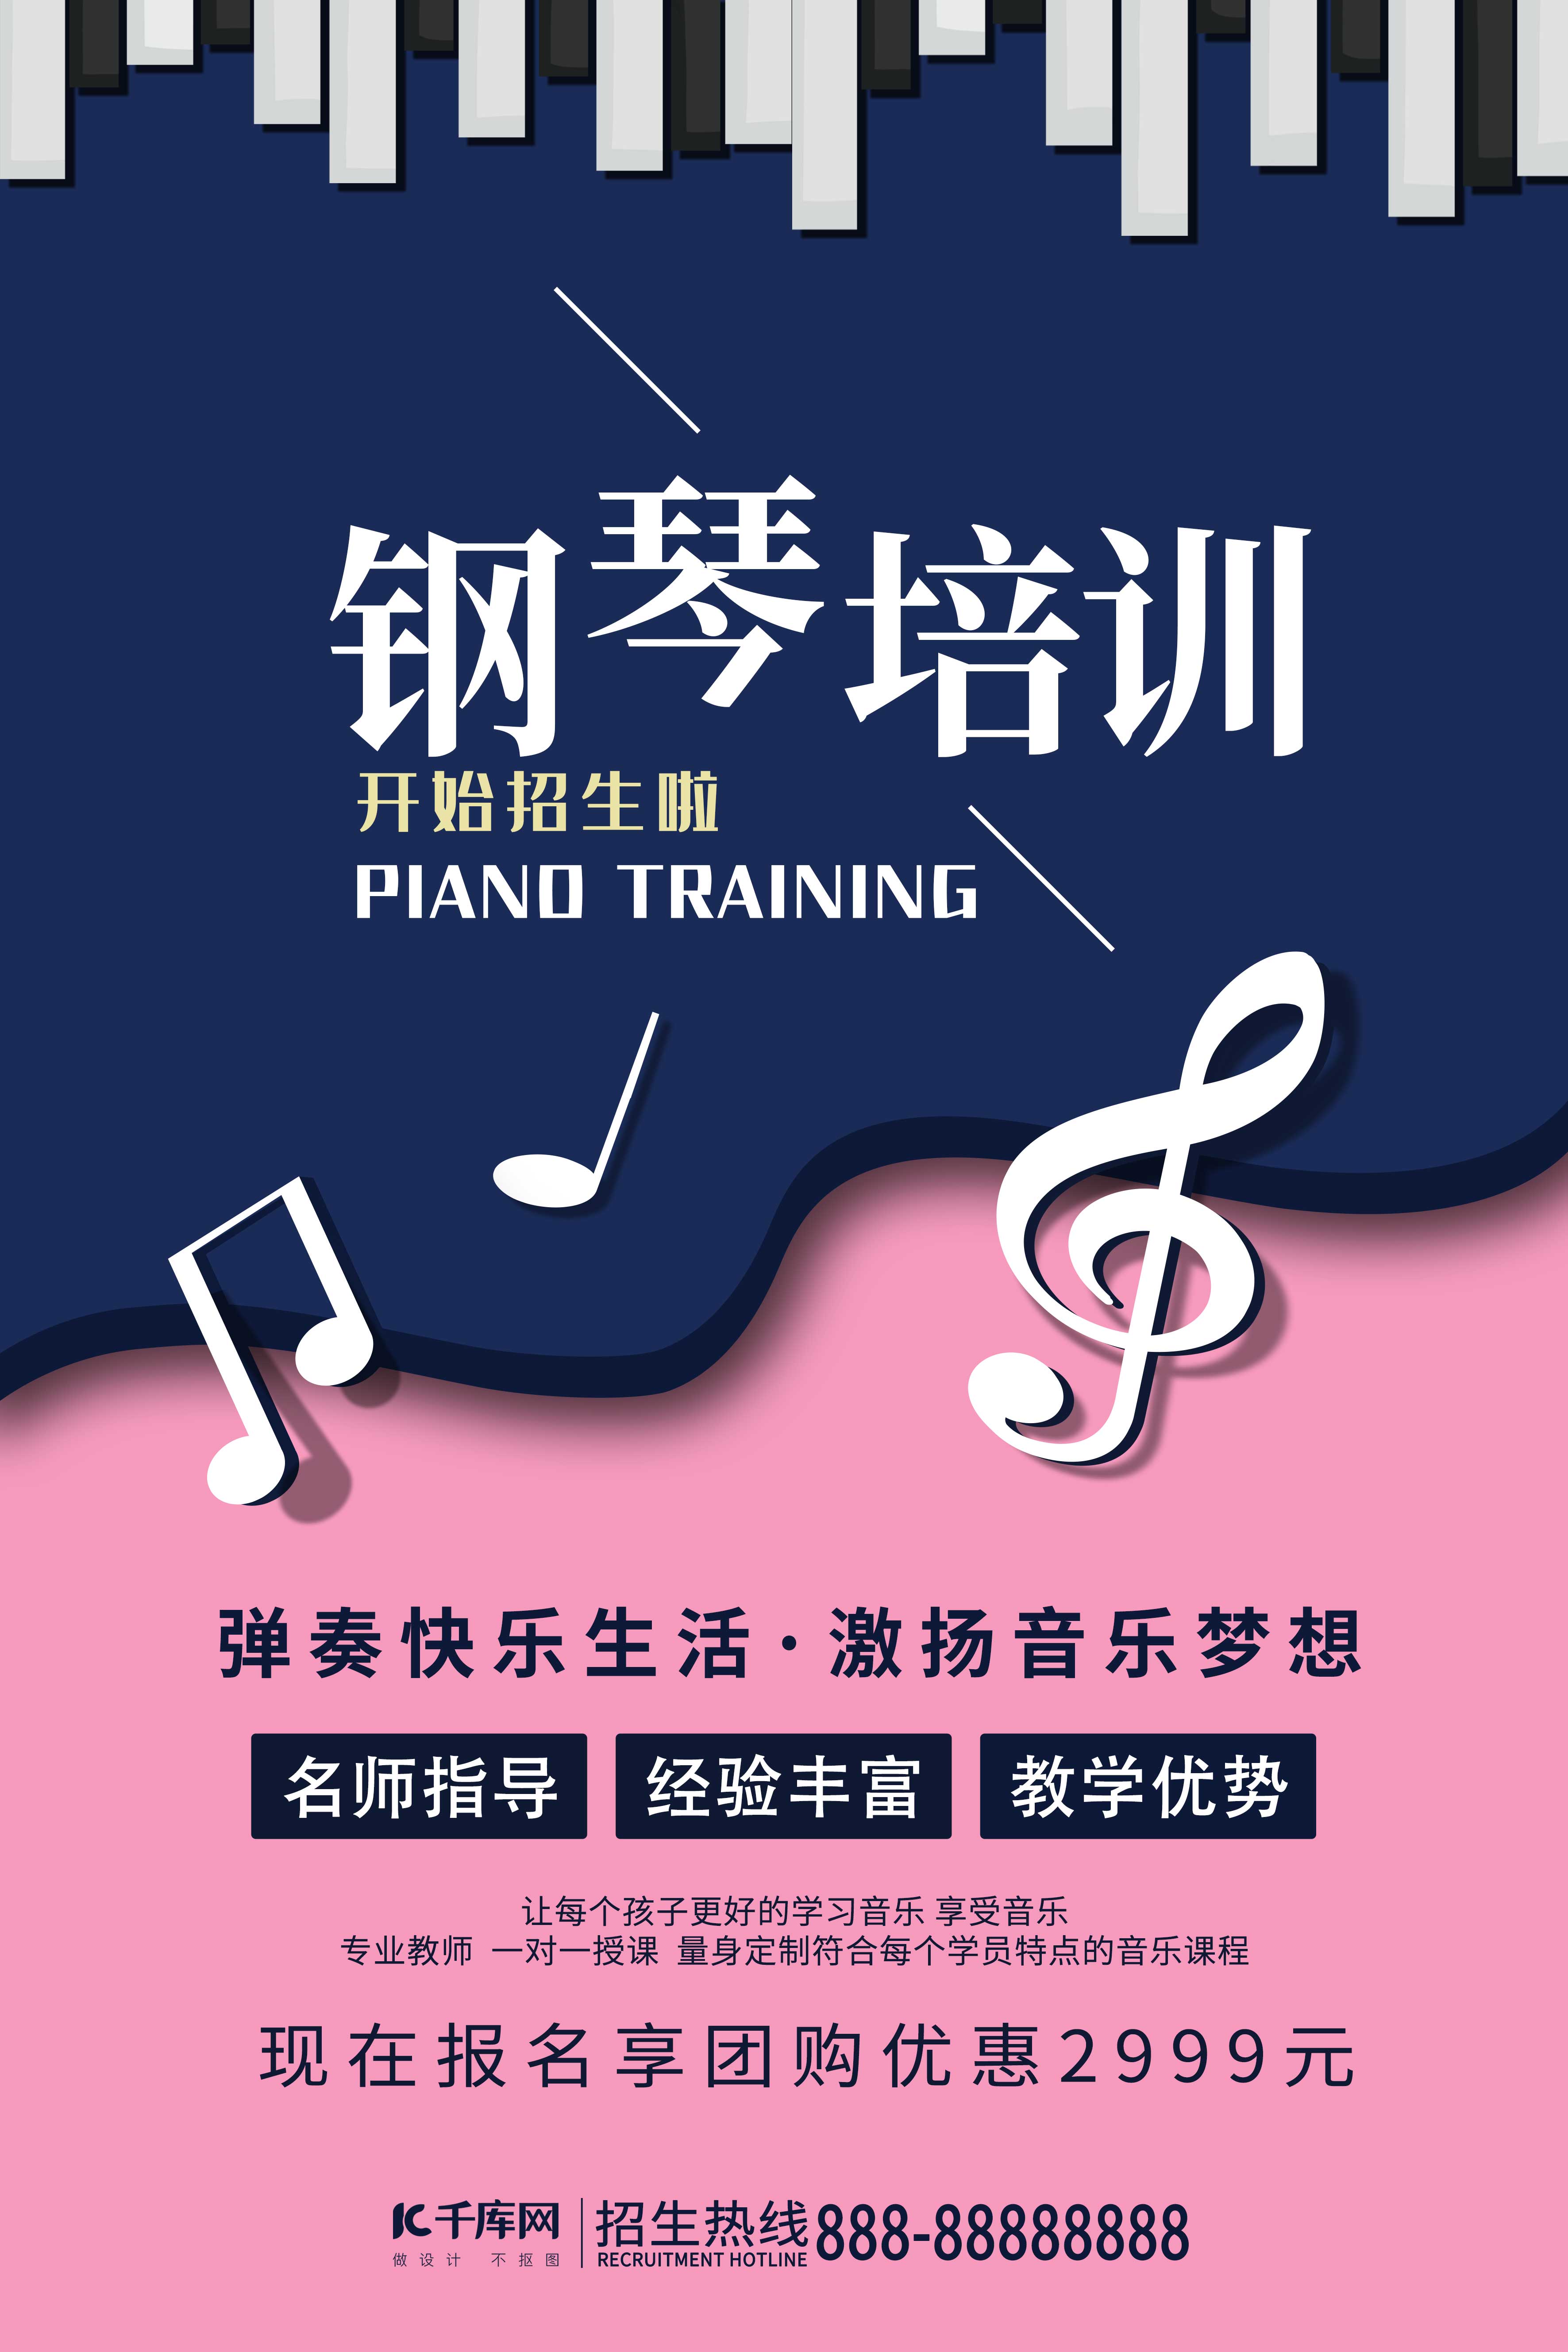 千库原创钢琴培训蓝色音乐类招生兴趣班海报图片